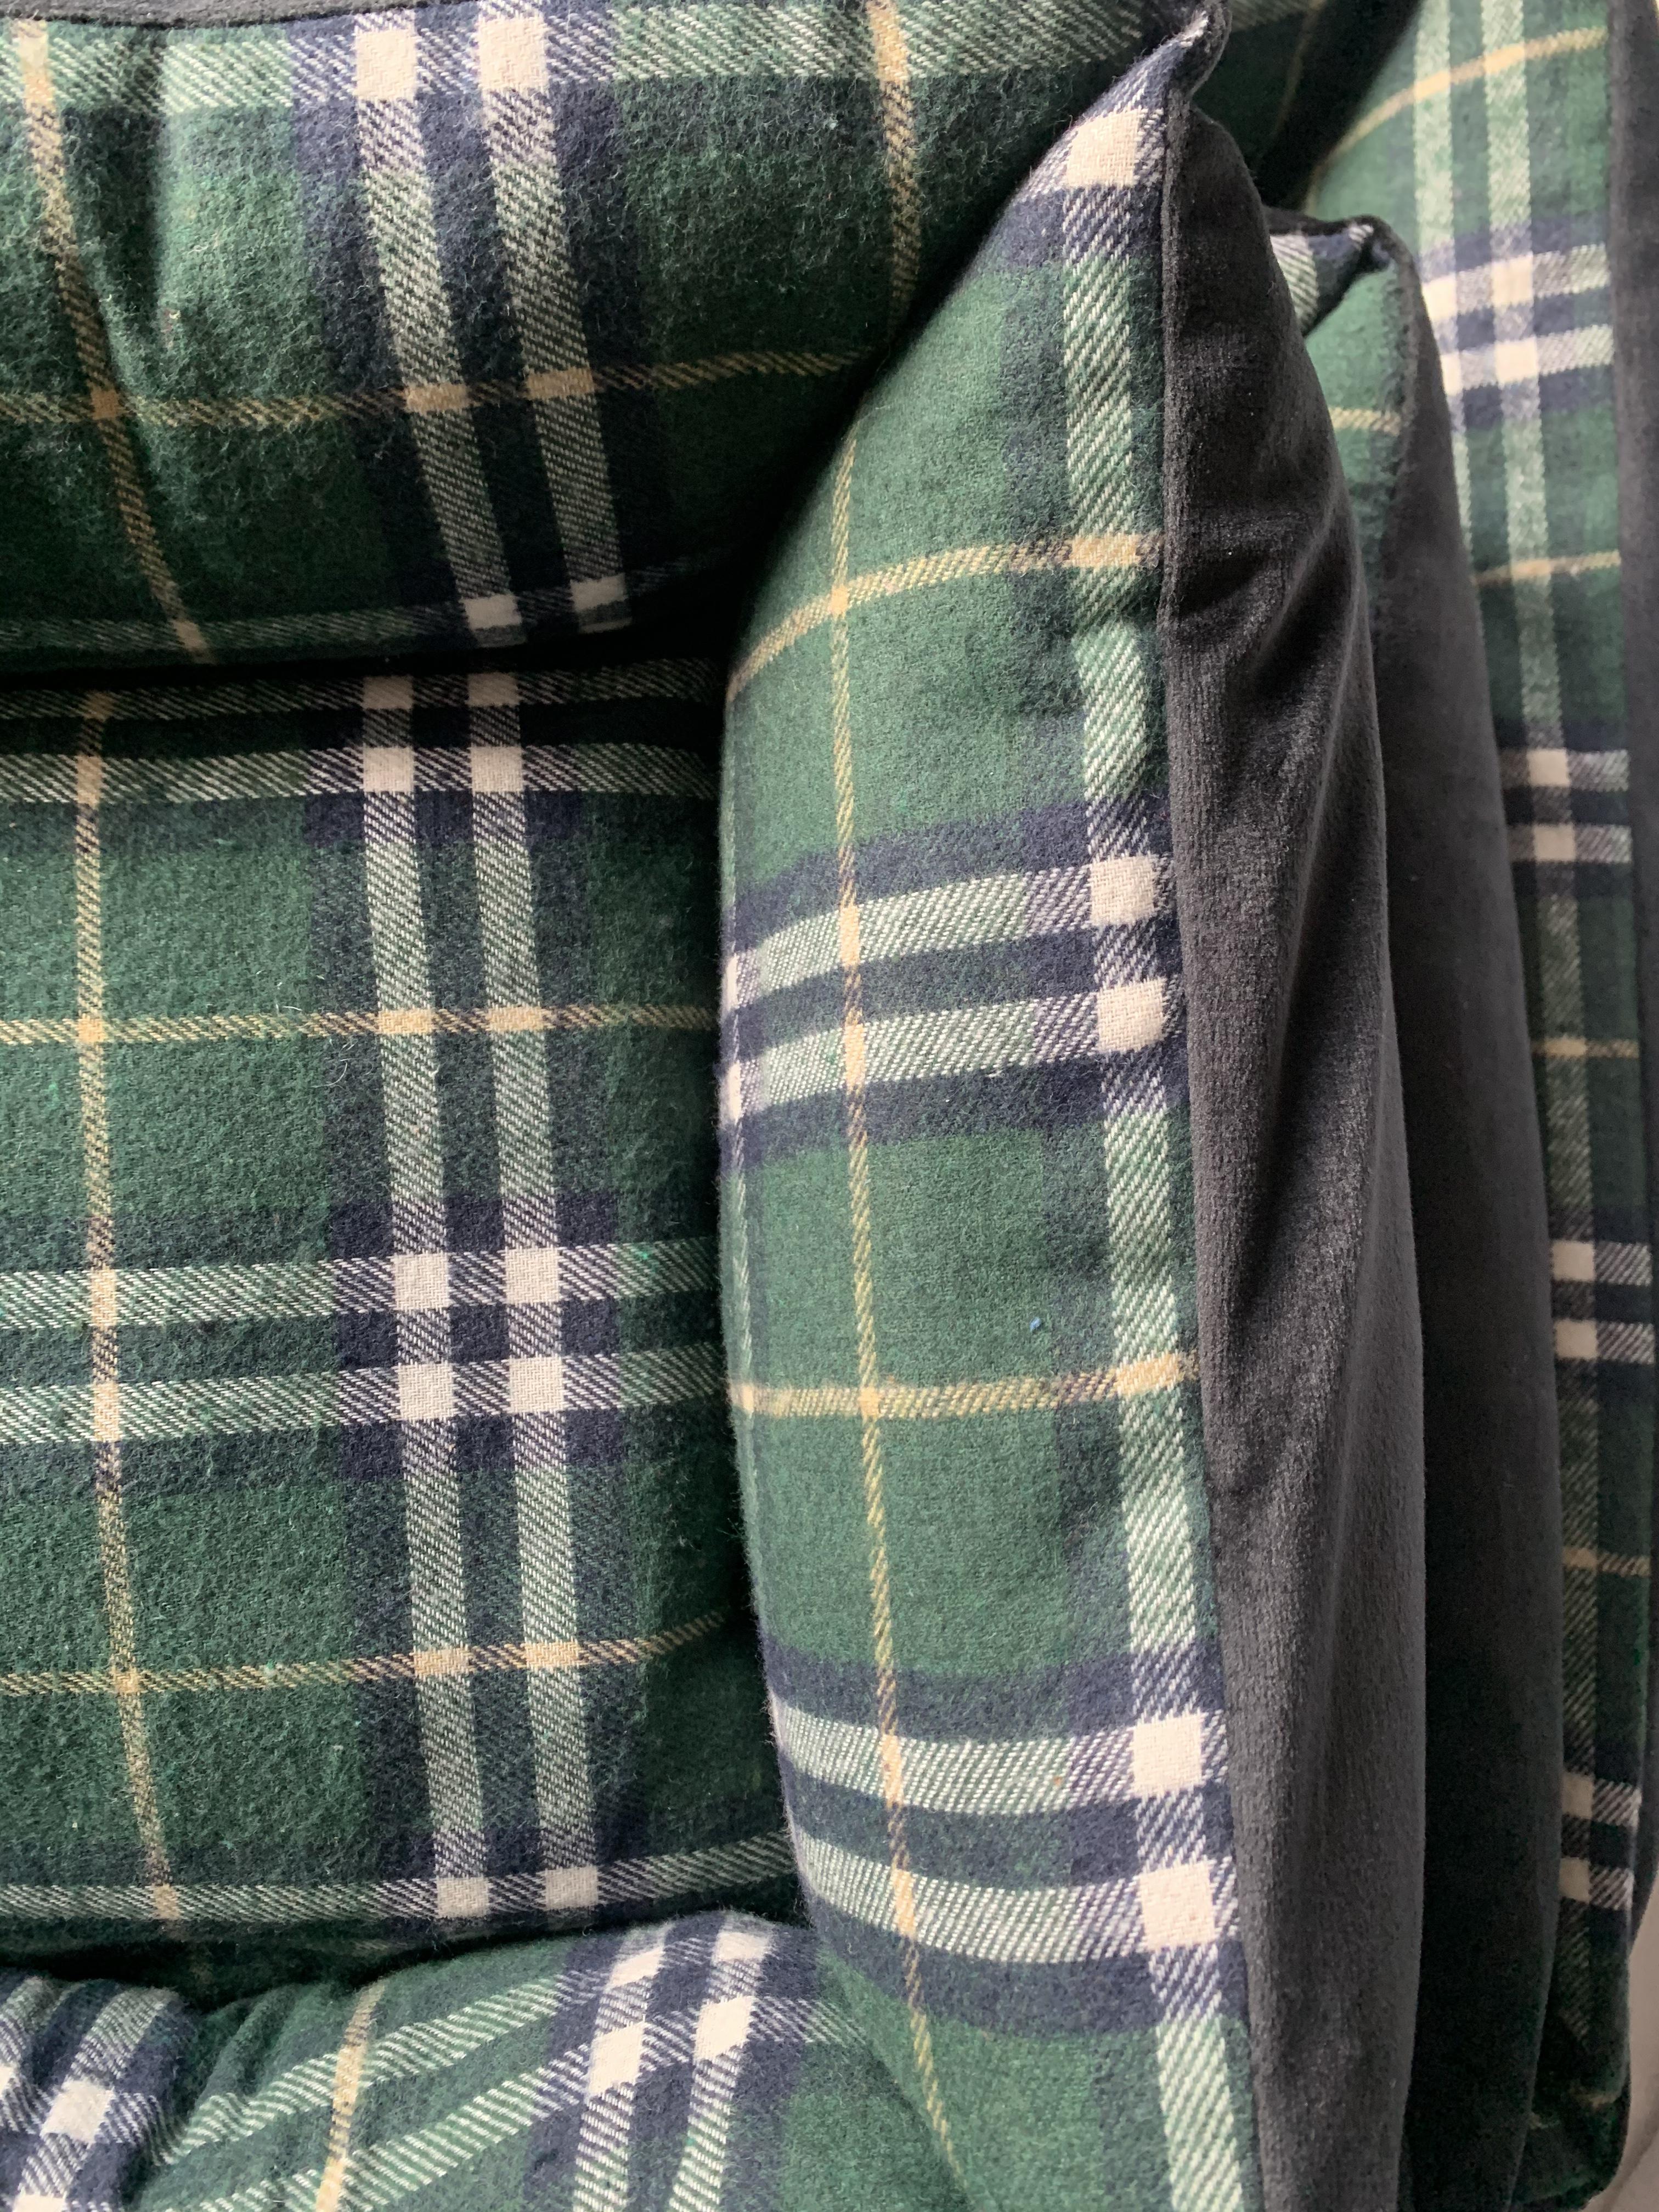 Close up of tartan dog bed